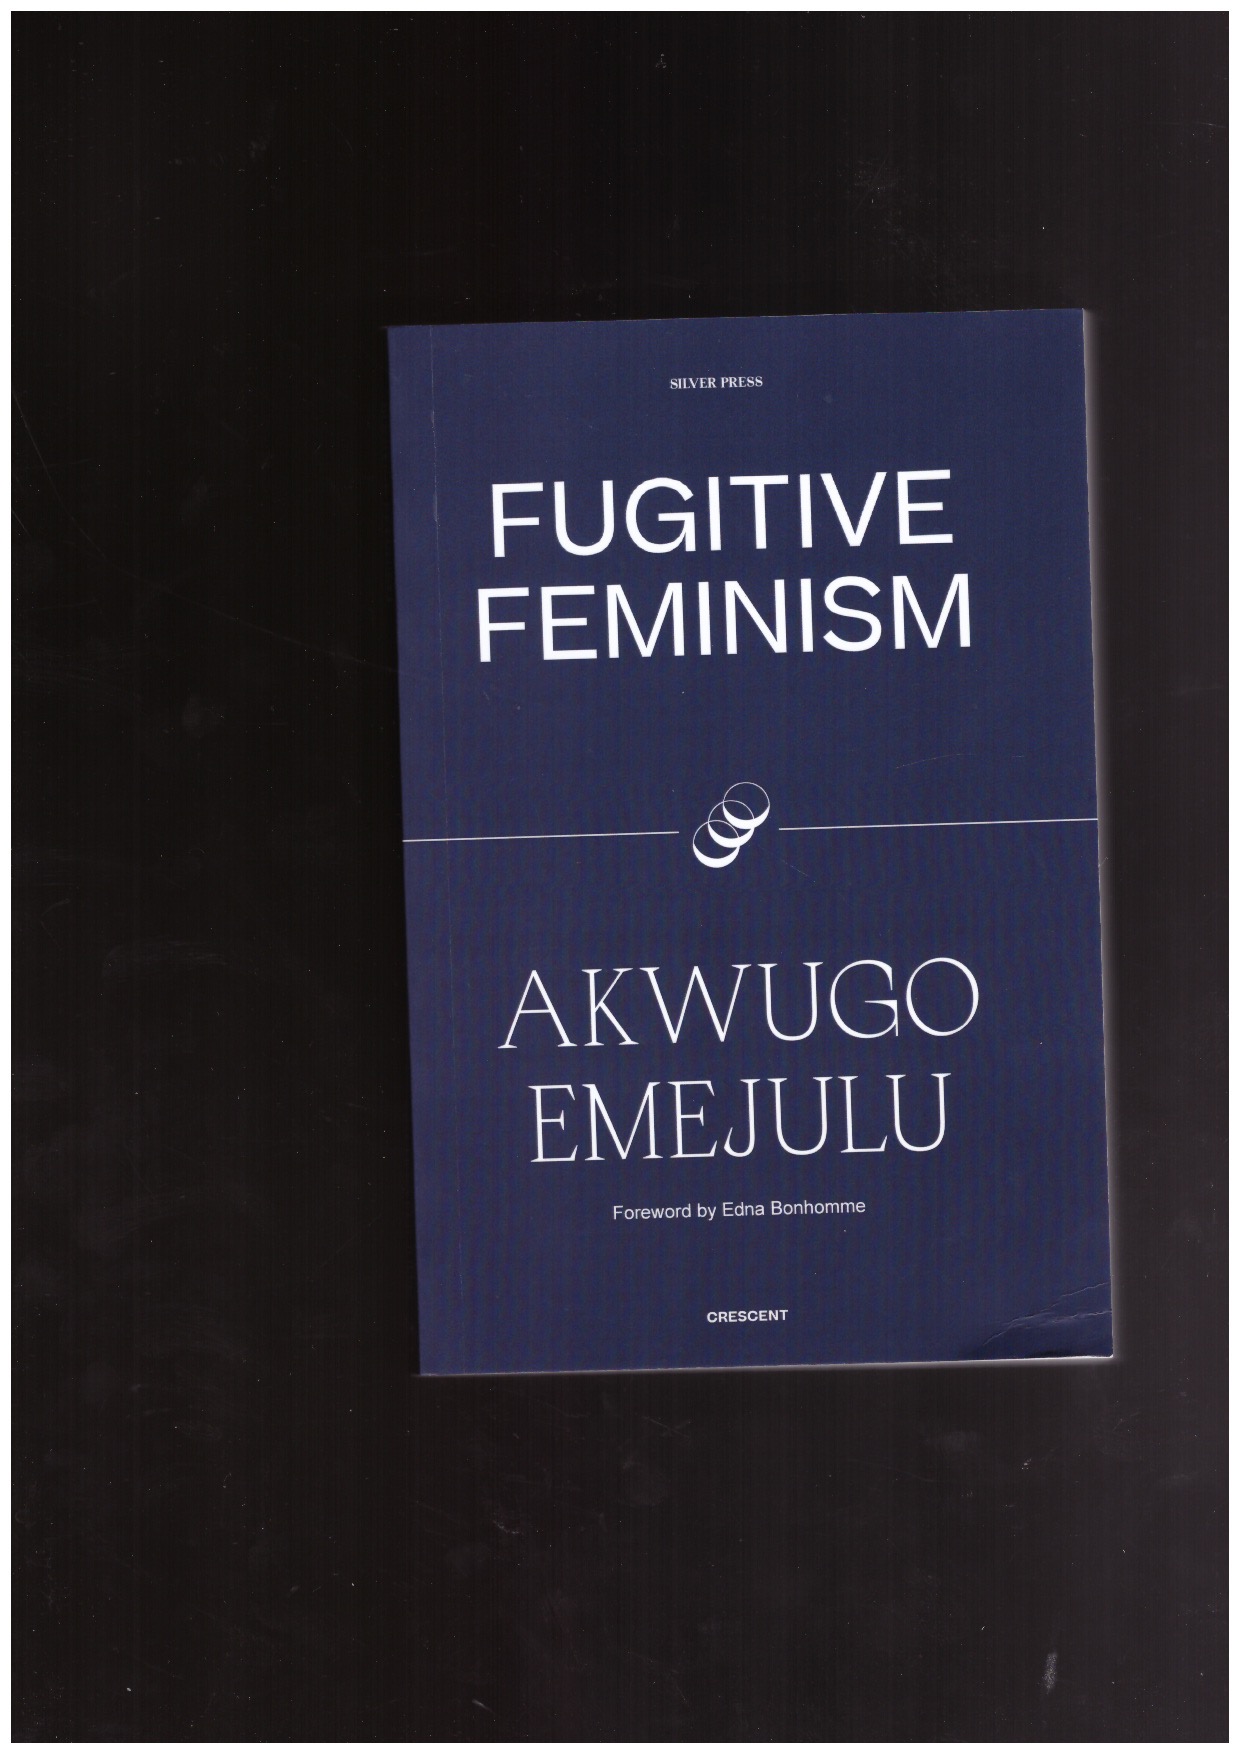 EMEJULU, Akwugo - Fugitive Feminism